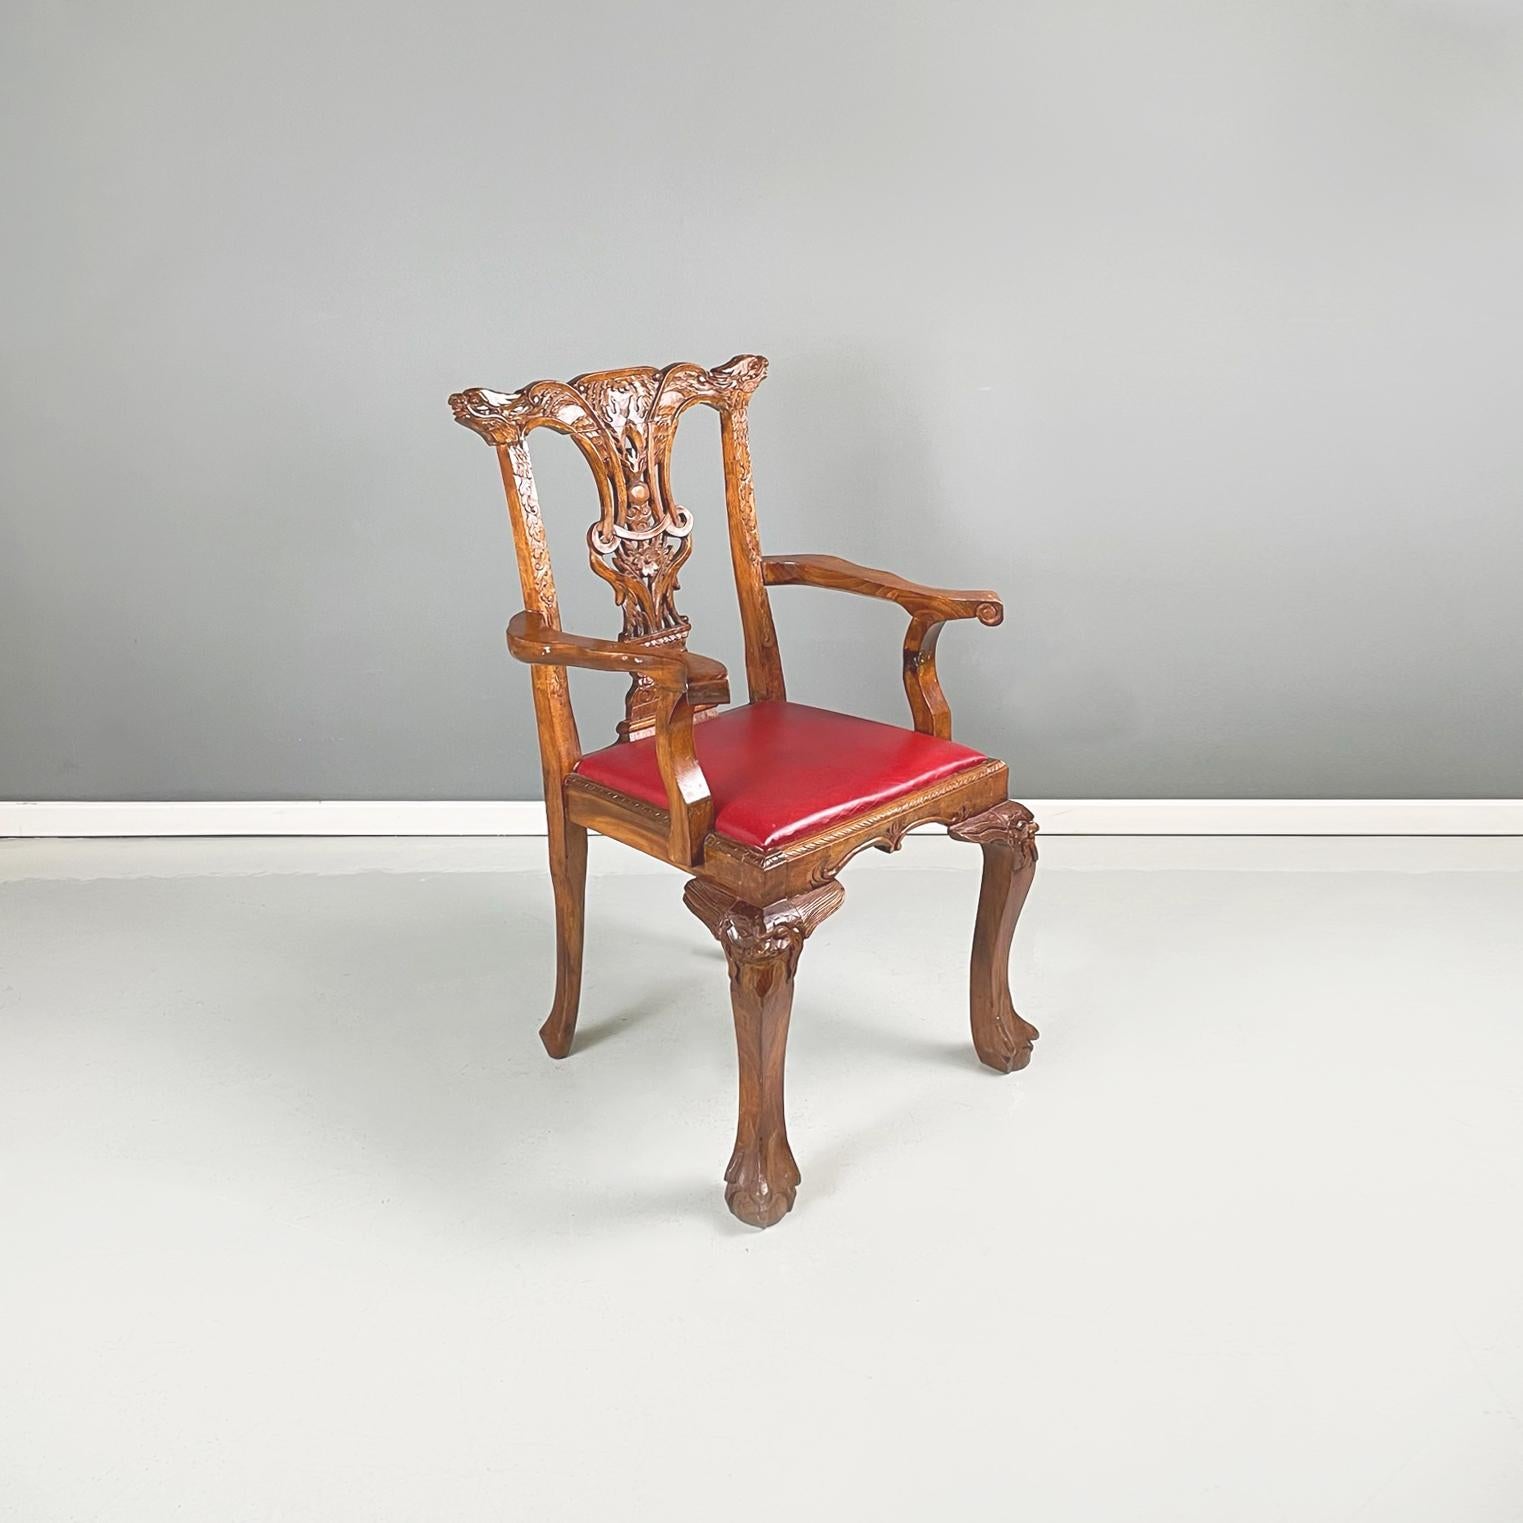 Chaises en bois de style Chippendale avec cuir rouge, début des années 1900
Paire de chaises avec structure en bois finement travaillée. L'assise carrée est rembourrée et revêtue de cuir rouge. Le dossier est décoré de fleurs et d'un dragon. Les